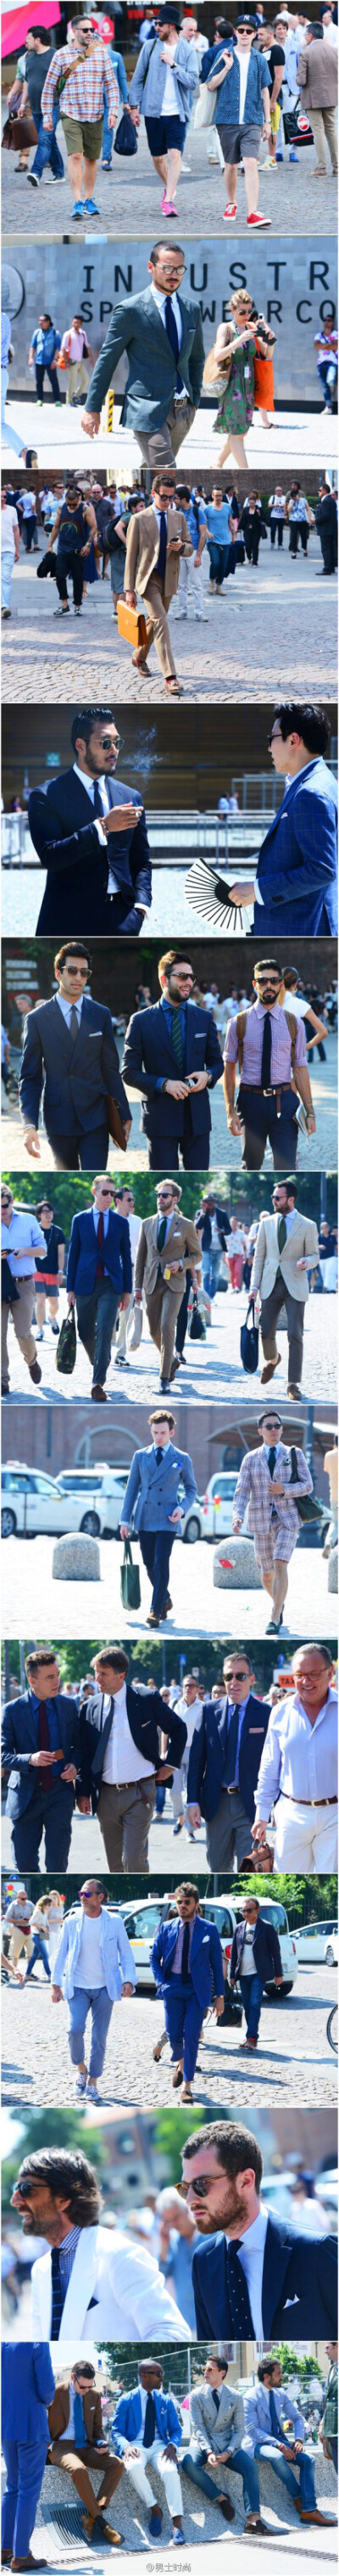 Pitti Uomo 男装展上的型男街拍（第三波）虽然所有男士的着装风格大抵相似，但还是百看不厌。